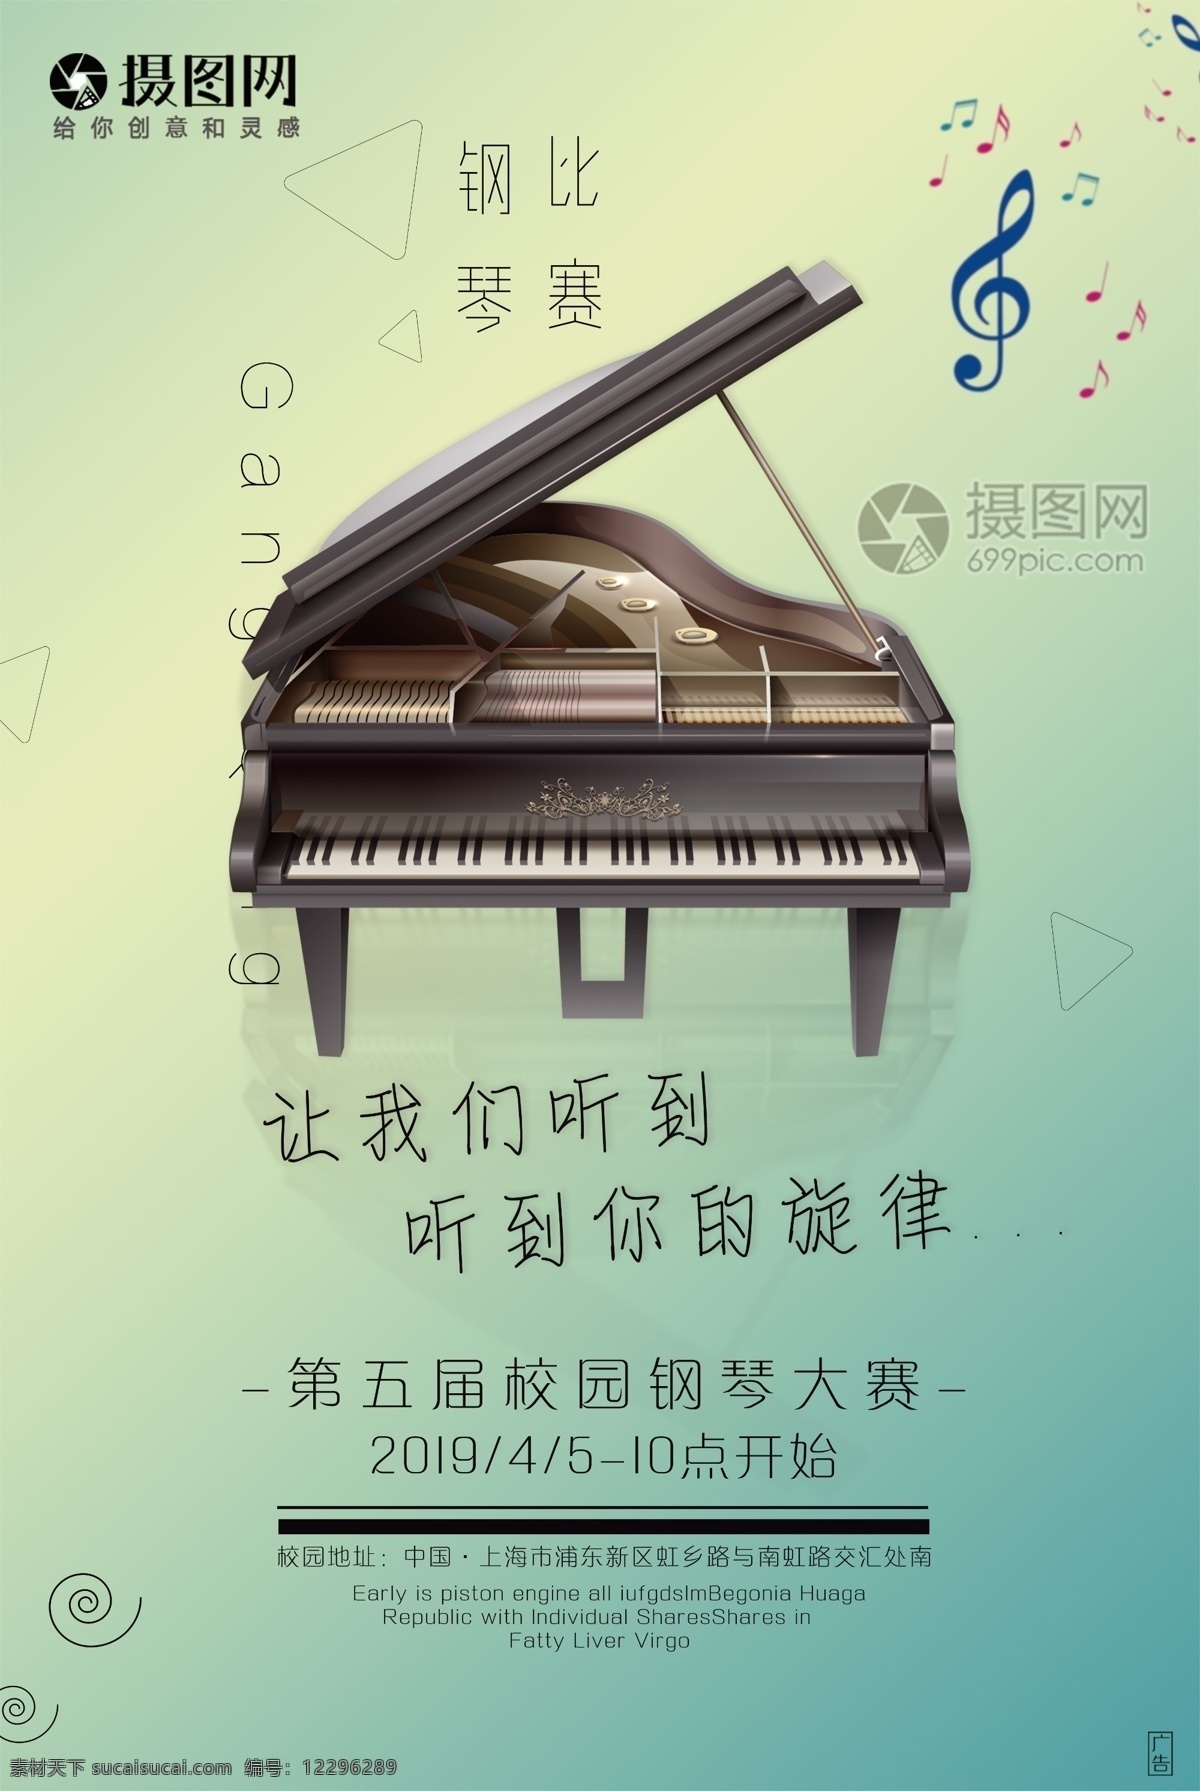 钢琴 音乐 活动 海报 唱歌 k歌 学校 校园 比赛 乐器 艺术 钢琴比赛